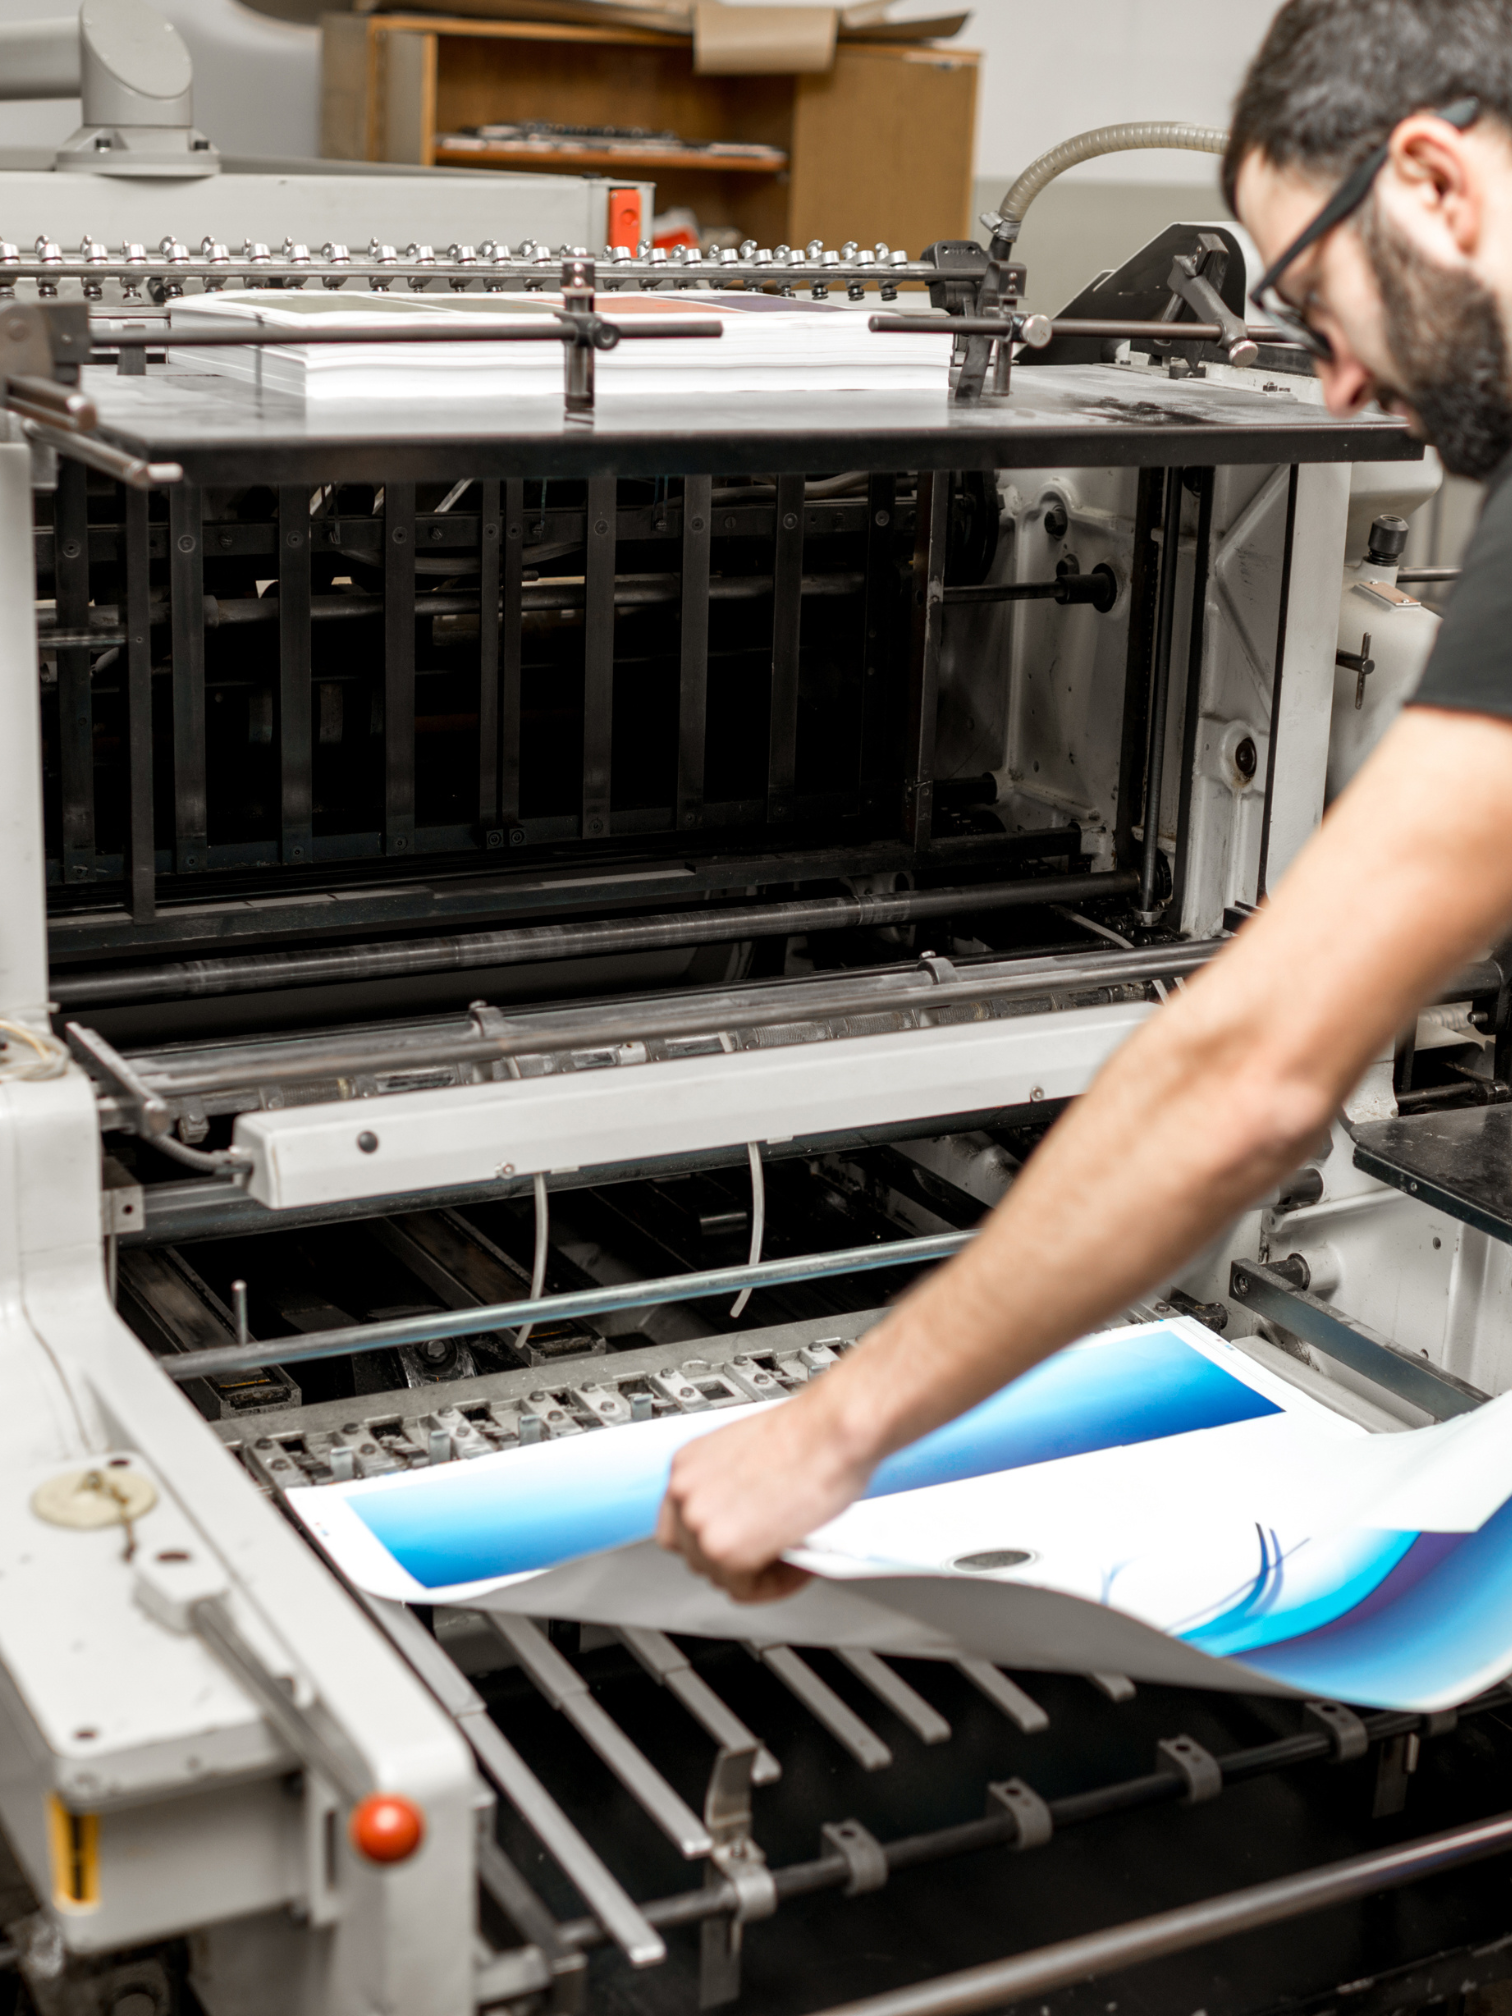 הדפסת מדבקה – איך זה קורה בפועל?